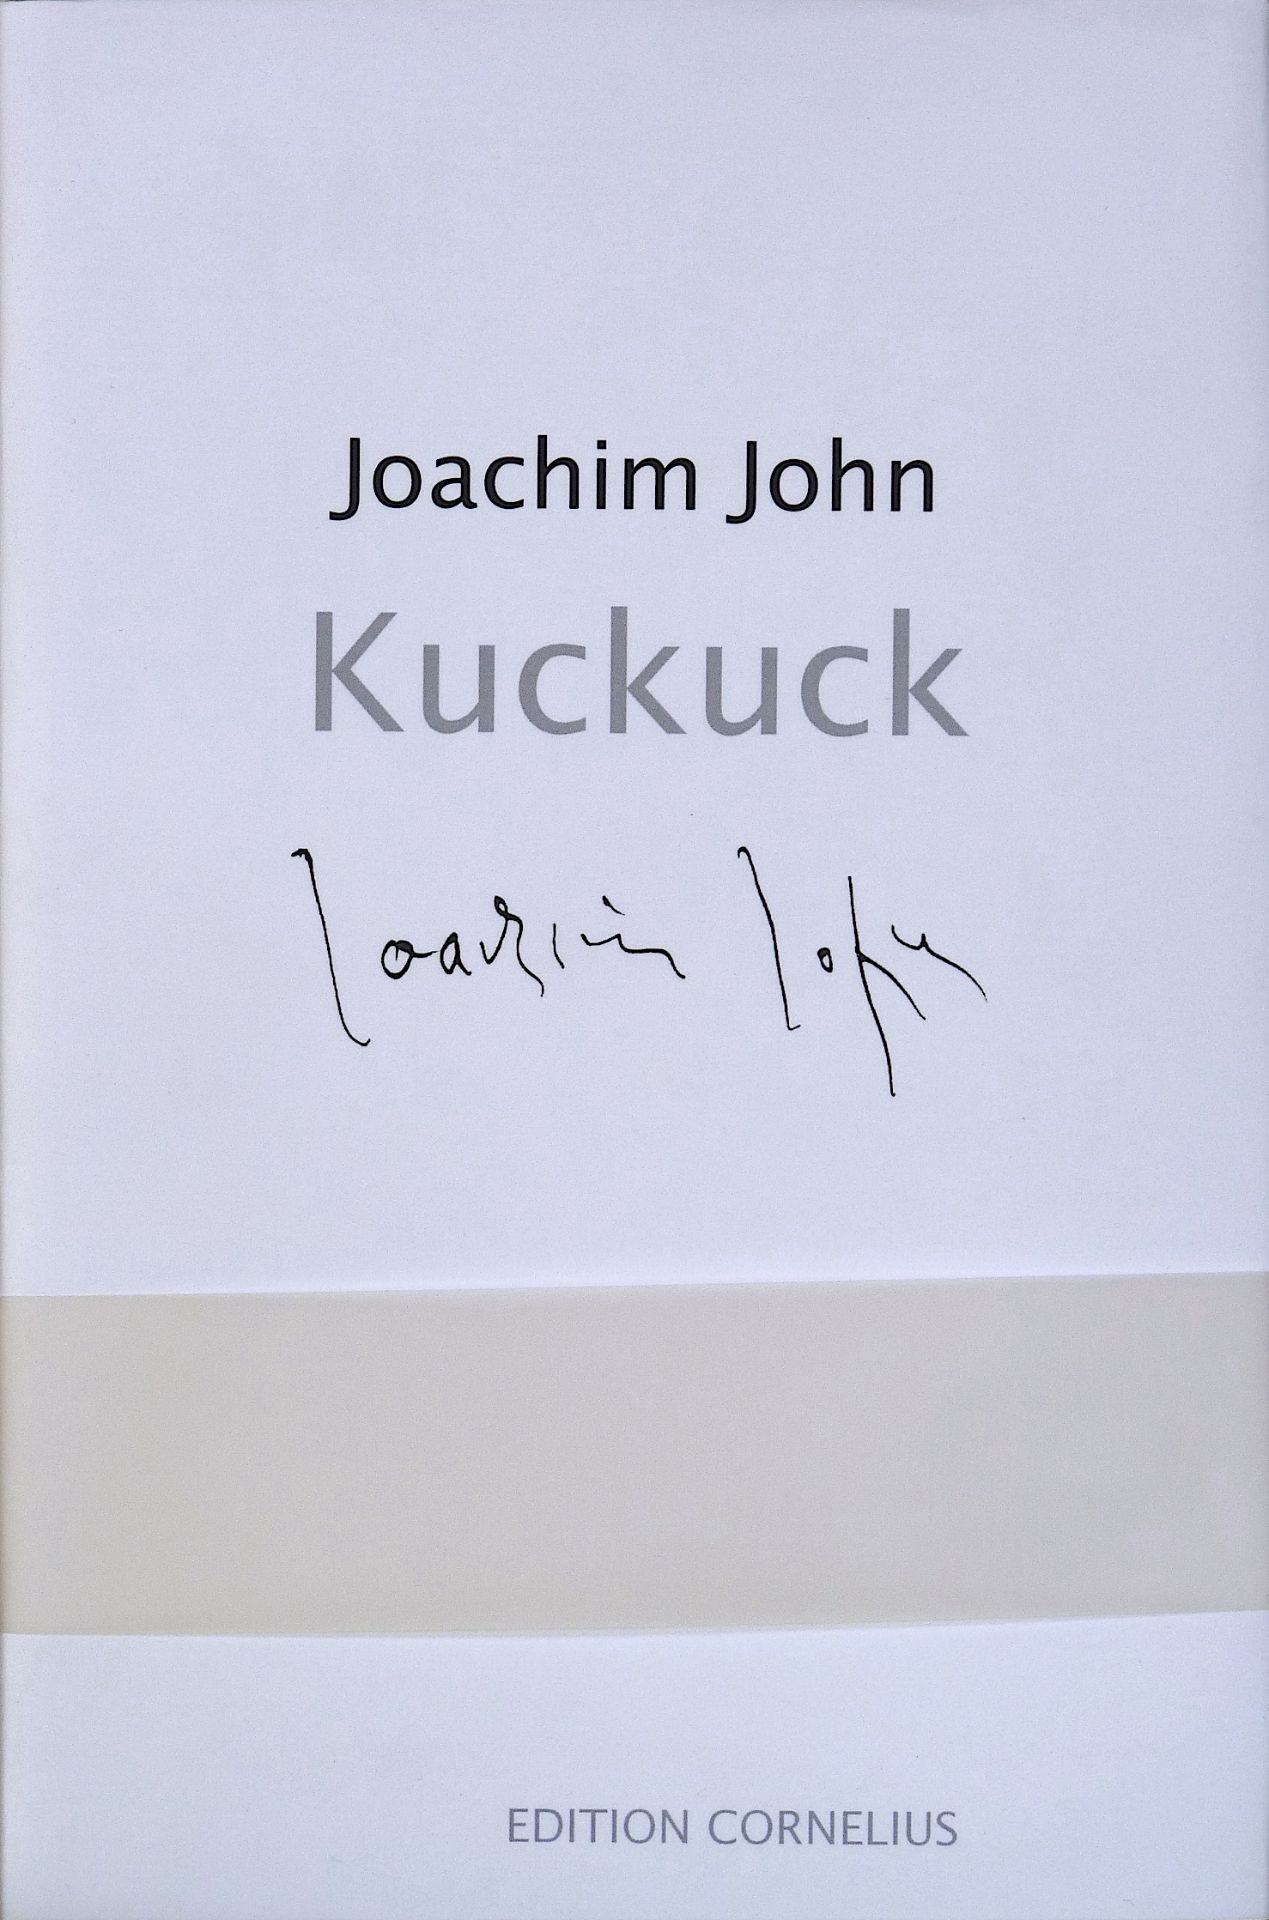 JOHN, JOACHIM: "Der Künstler beim Zeichnen eines Kuckucks", 2012